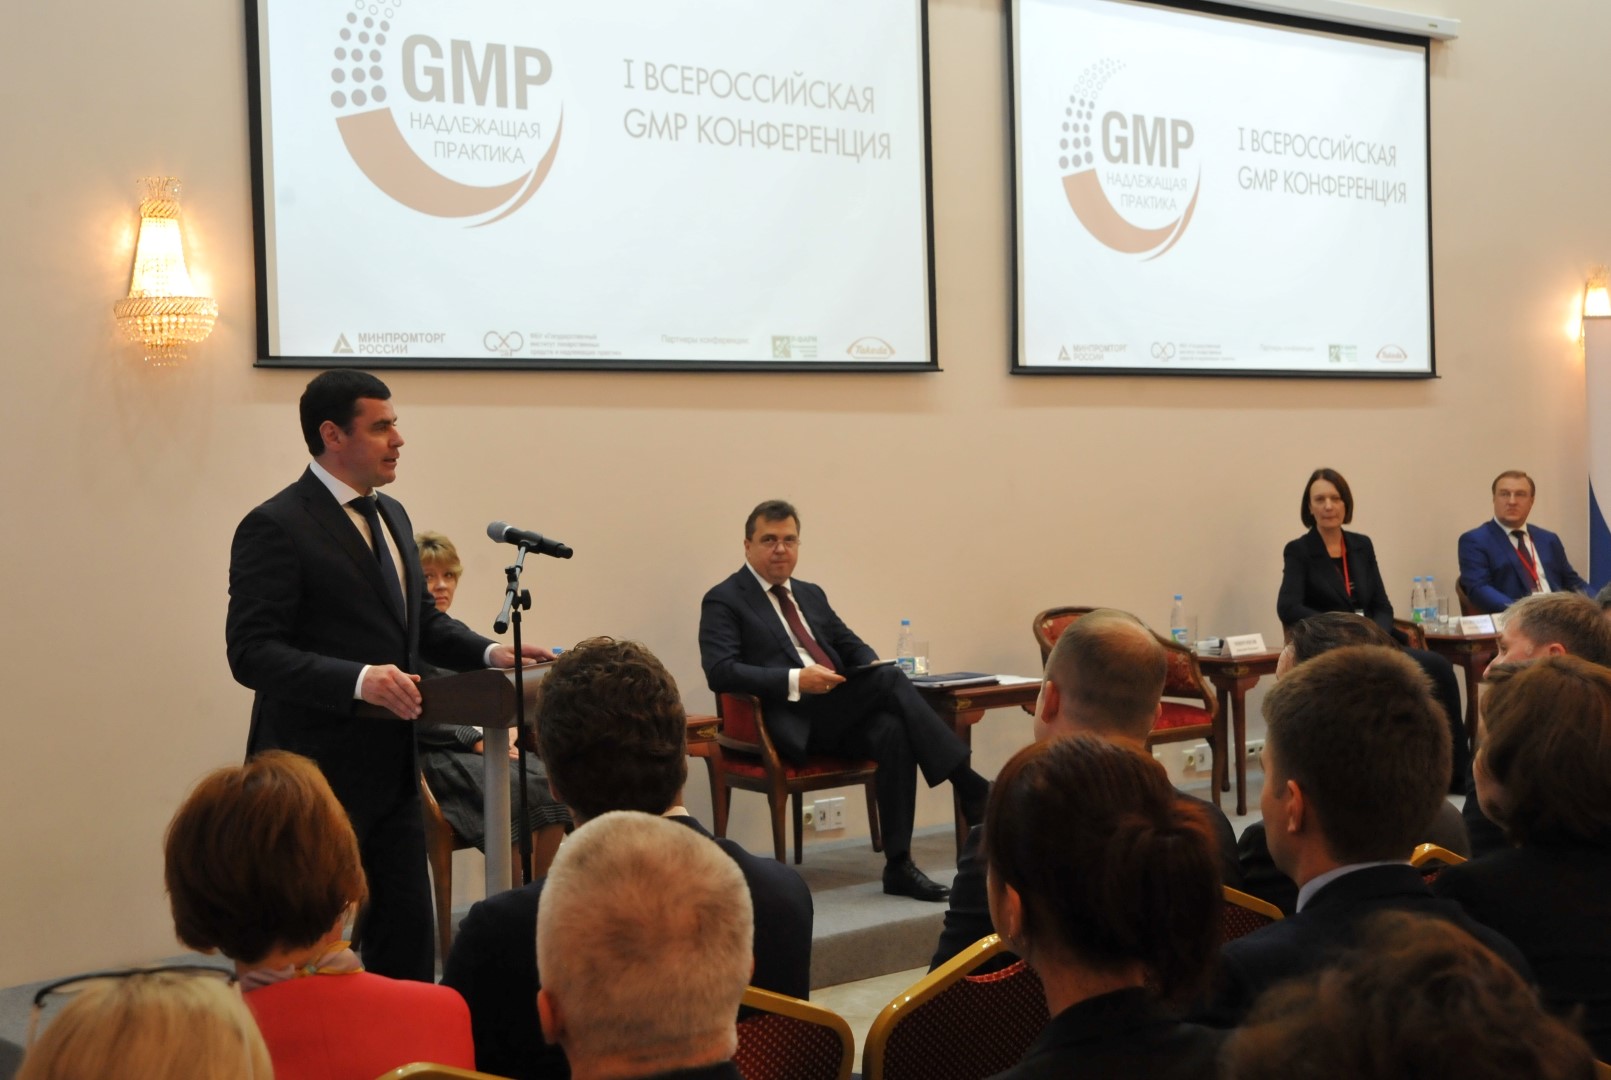 Ярославль стал площадкой для проведения I Всероссийской GMP-конференции